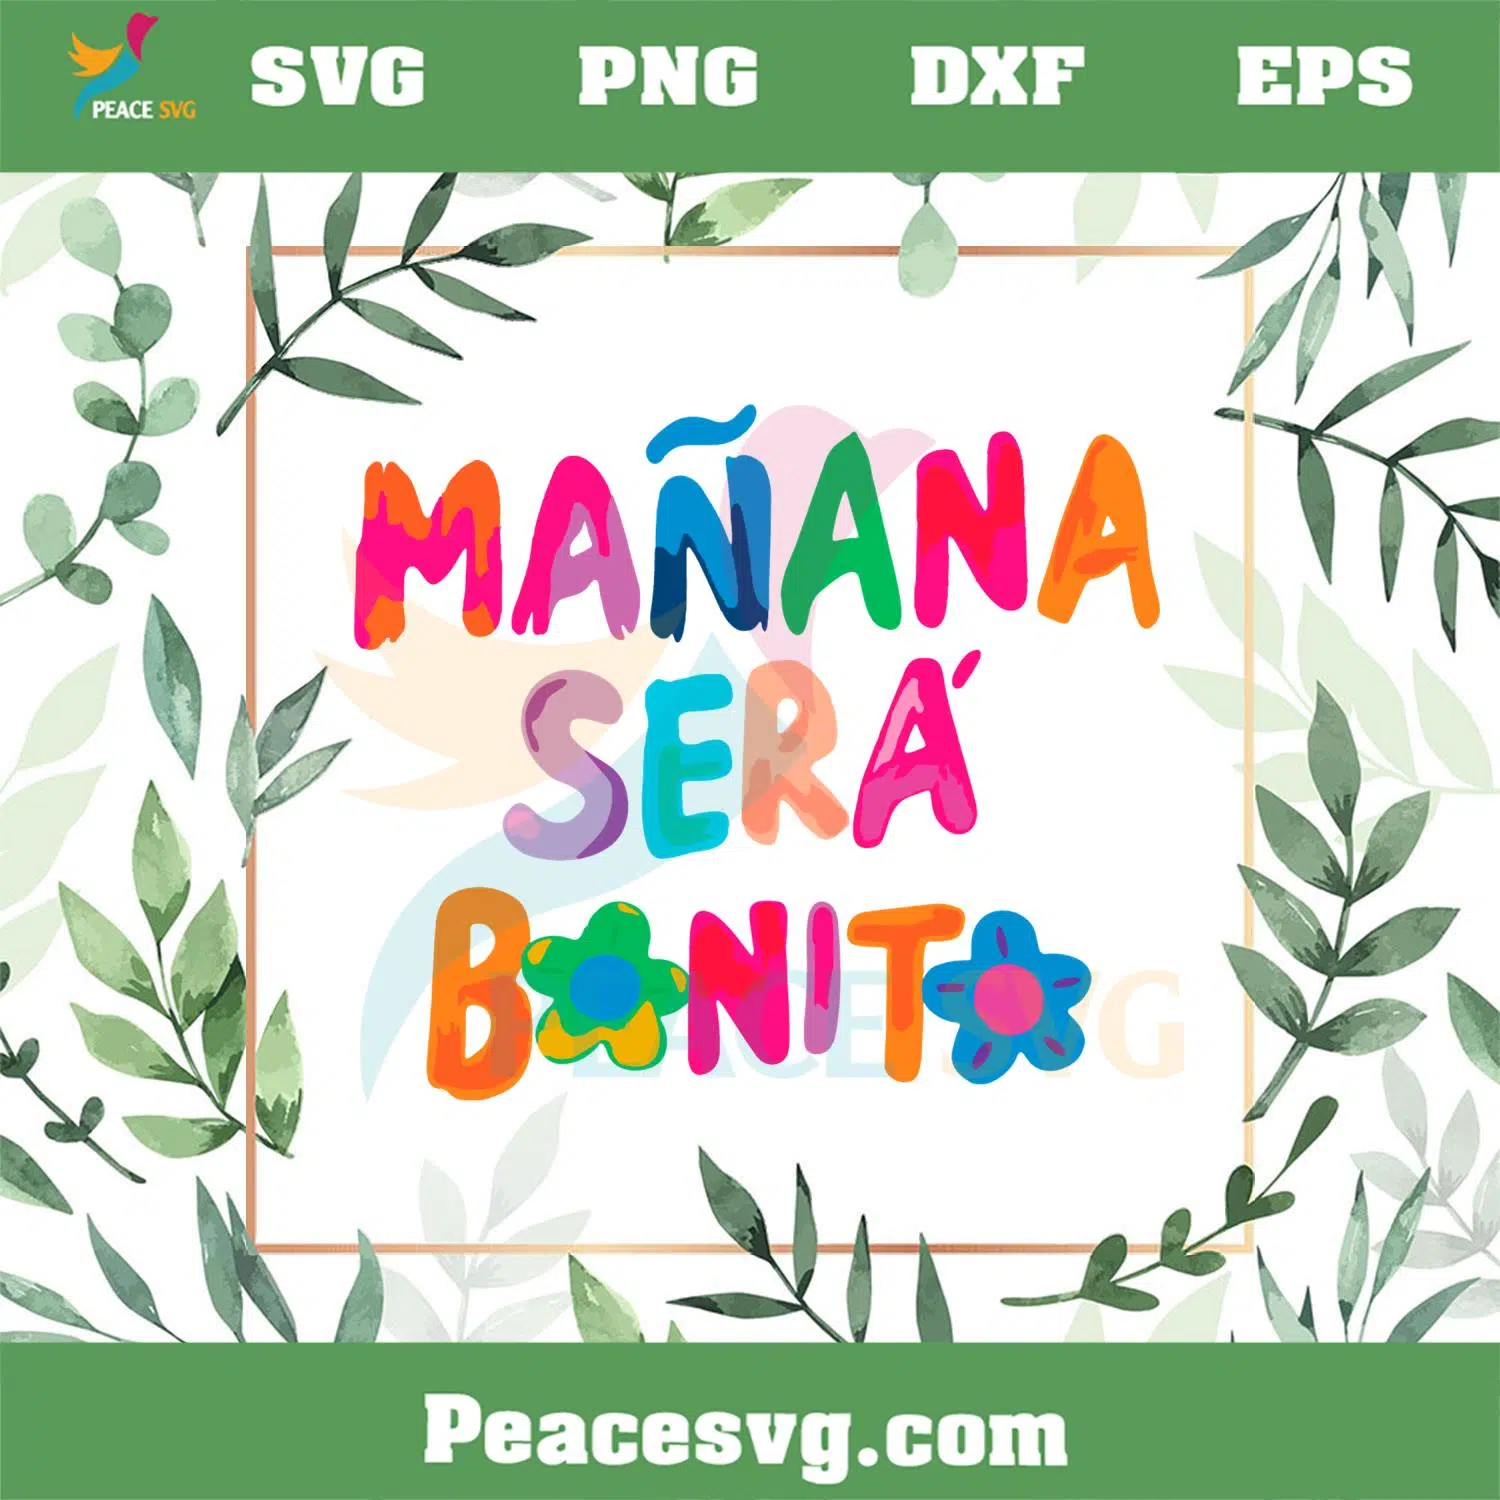 Manana Sera Bonito Karol G SVG For Cricut Sublimation Files